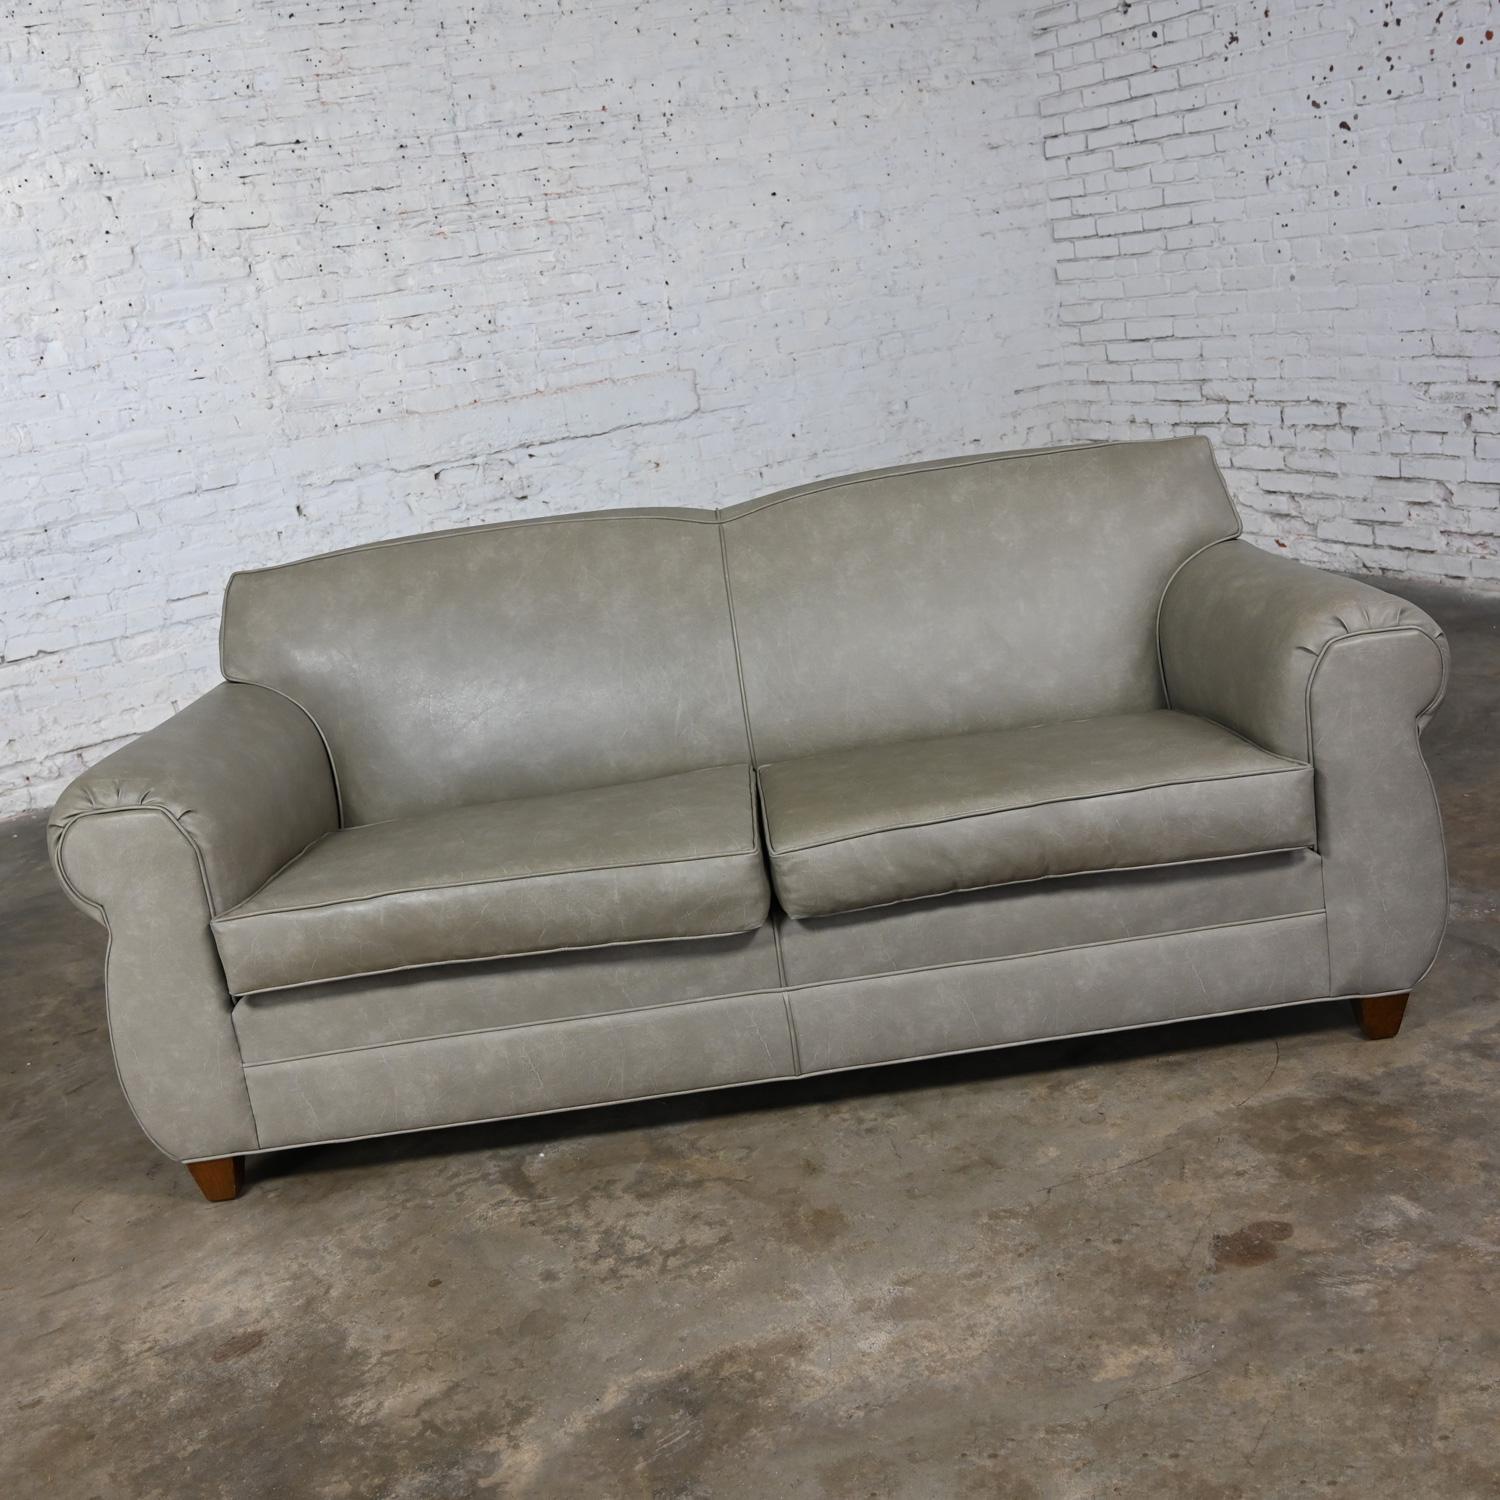 Magnifique canapé Bridgewater vintage en similicuir gris taupe avec dossier serré, deux coussins d'assise détachés et pieds en bois coniques carrés. Très bon état, tout en gardant à l'esprit qu'il s'agit d'un produit vintage et non neuf, qui